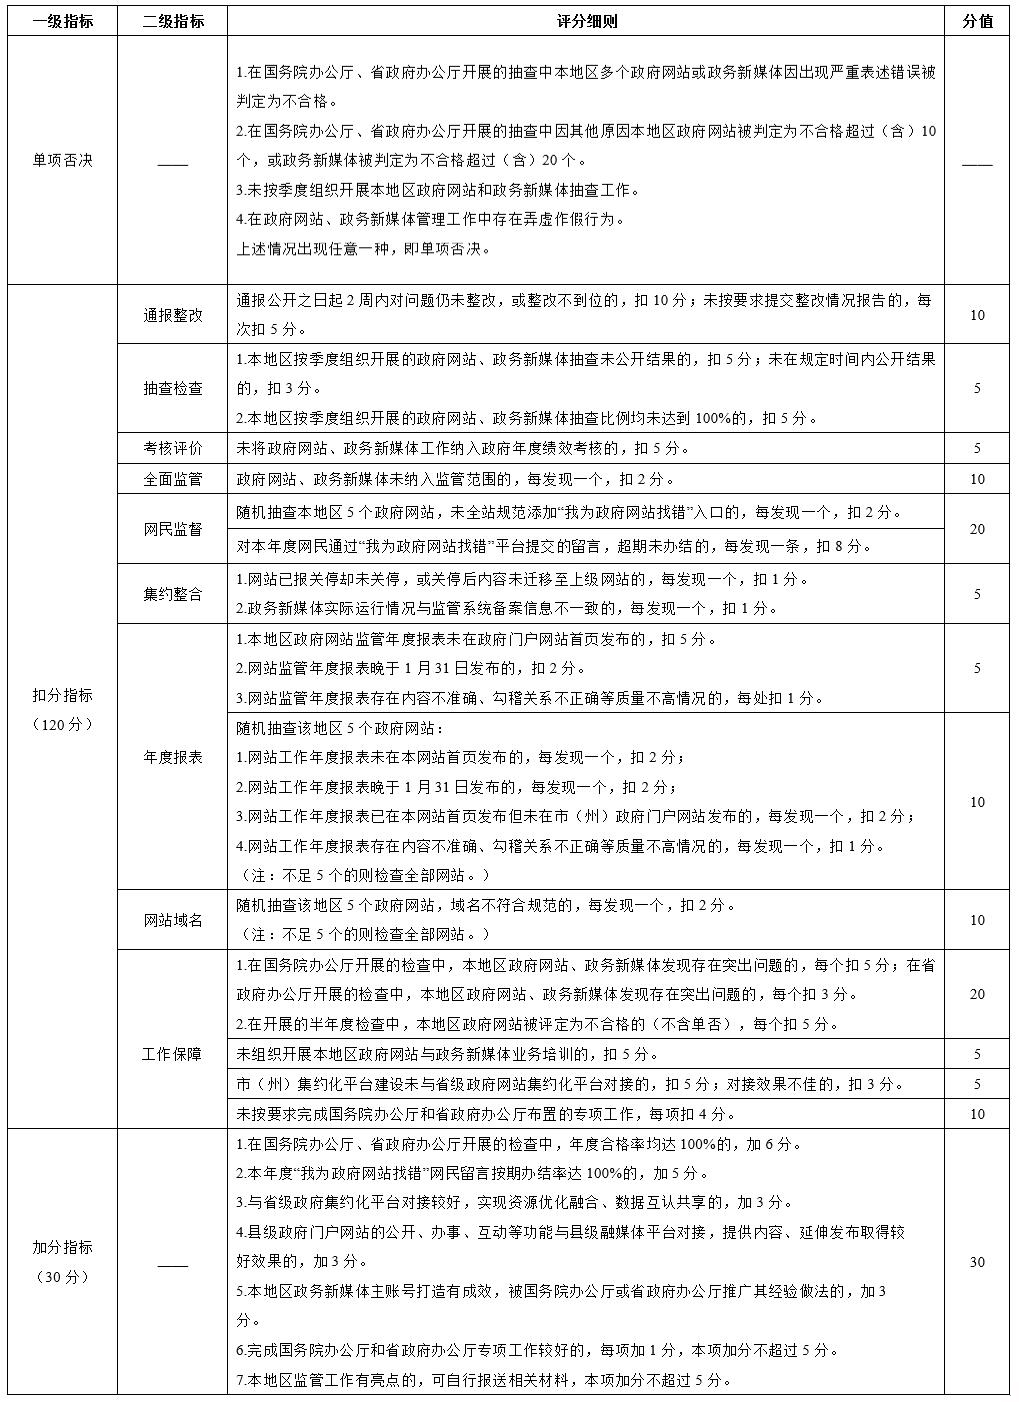 四川省公民政府讯息公创办公室br闭于优化调治政府网站与体系政